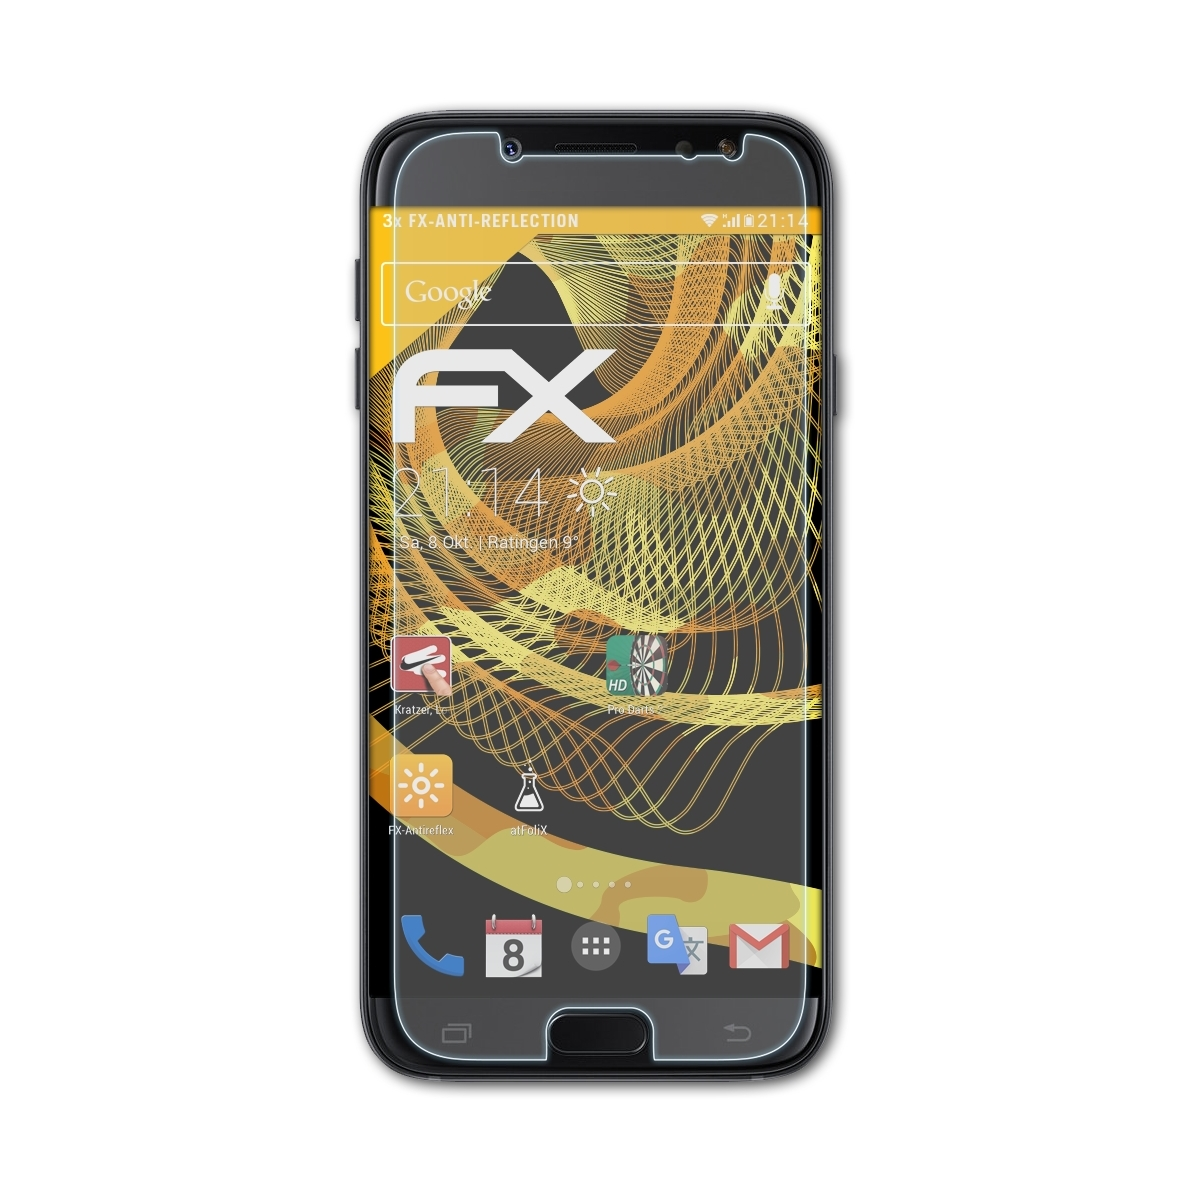 ATFOLIX 3x FX-Antireflex Displayschutz(für Samsung Duos) J5 (2017) Galaxy